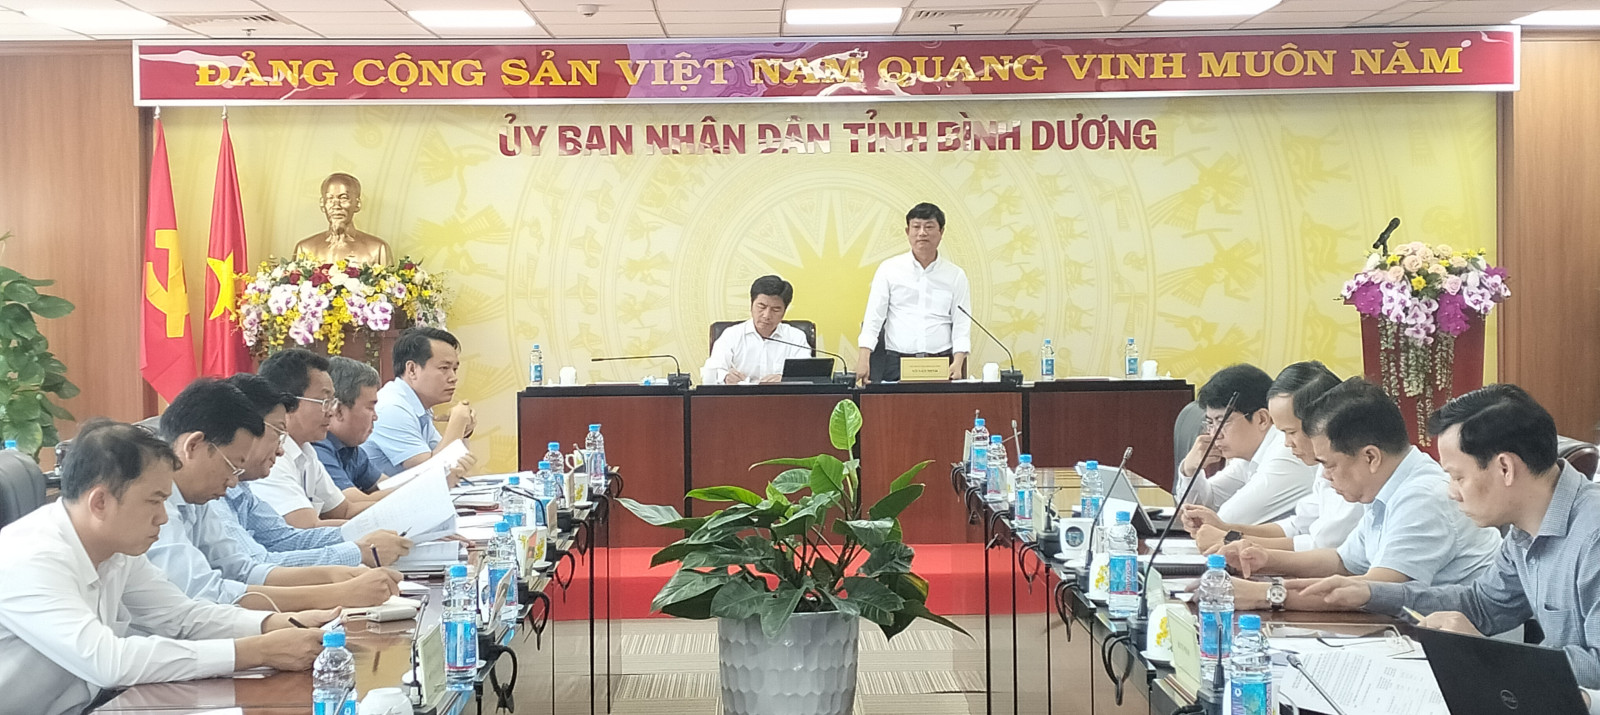 ng Võ Văn Minh, Phó Bí thư Tỉnh ủy, Chủ tịch UBND tỉnh Bình Dương